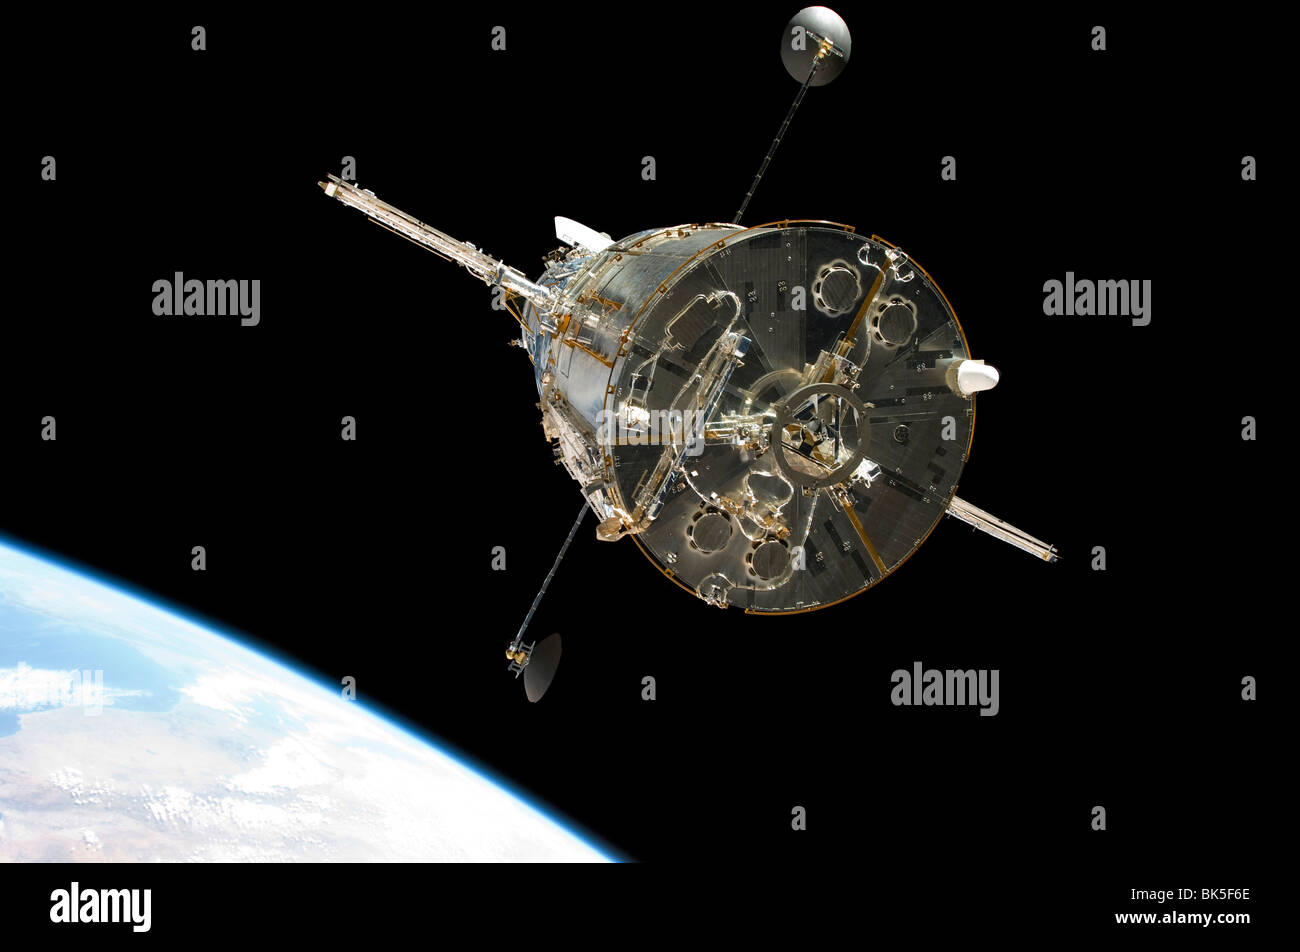 Ein Besatzungsmitglied an Bord des Space Shuttle Atlantis erobert dieses noch Bild des Hubble-Weltraumteleskops Stockfoto